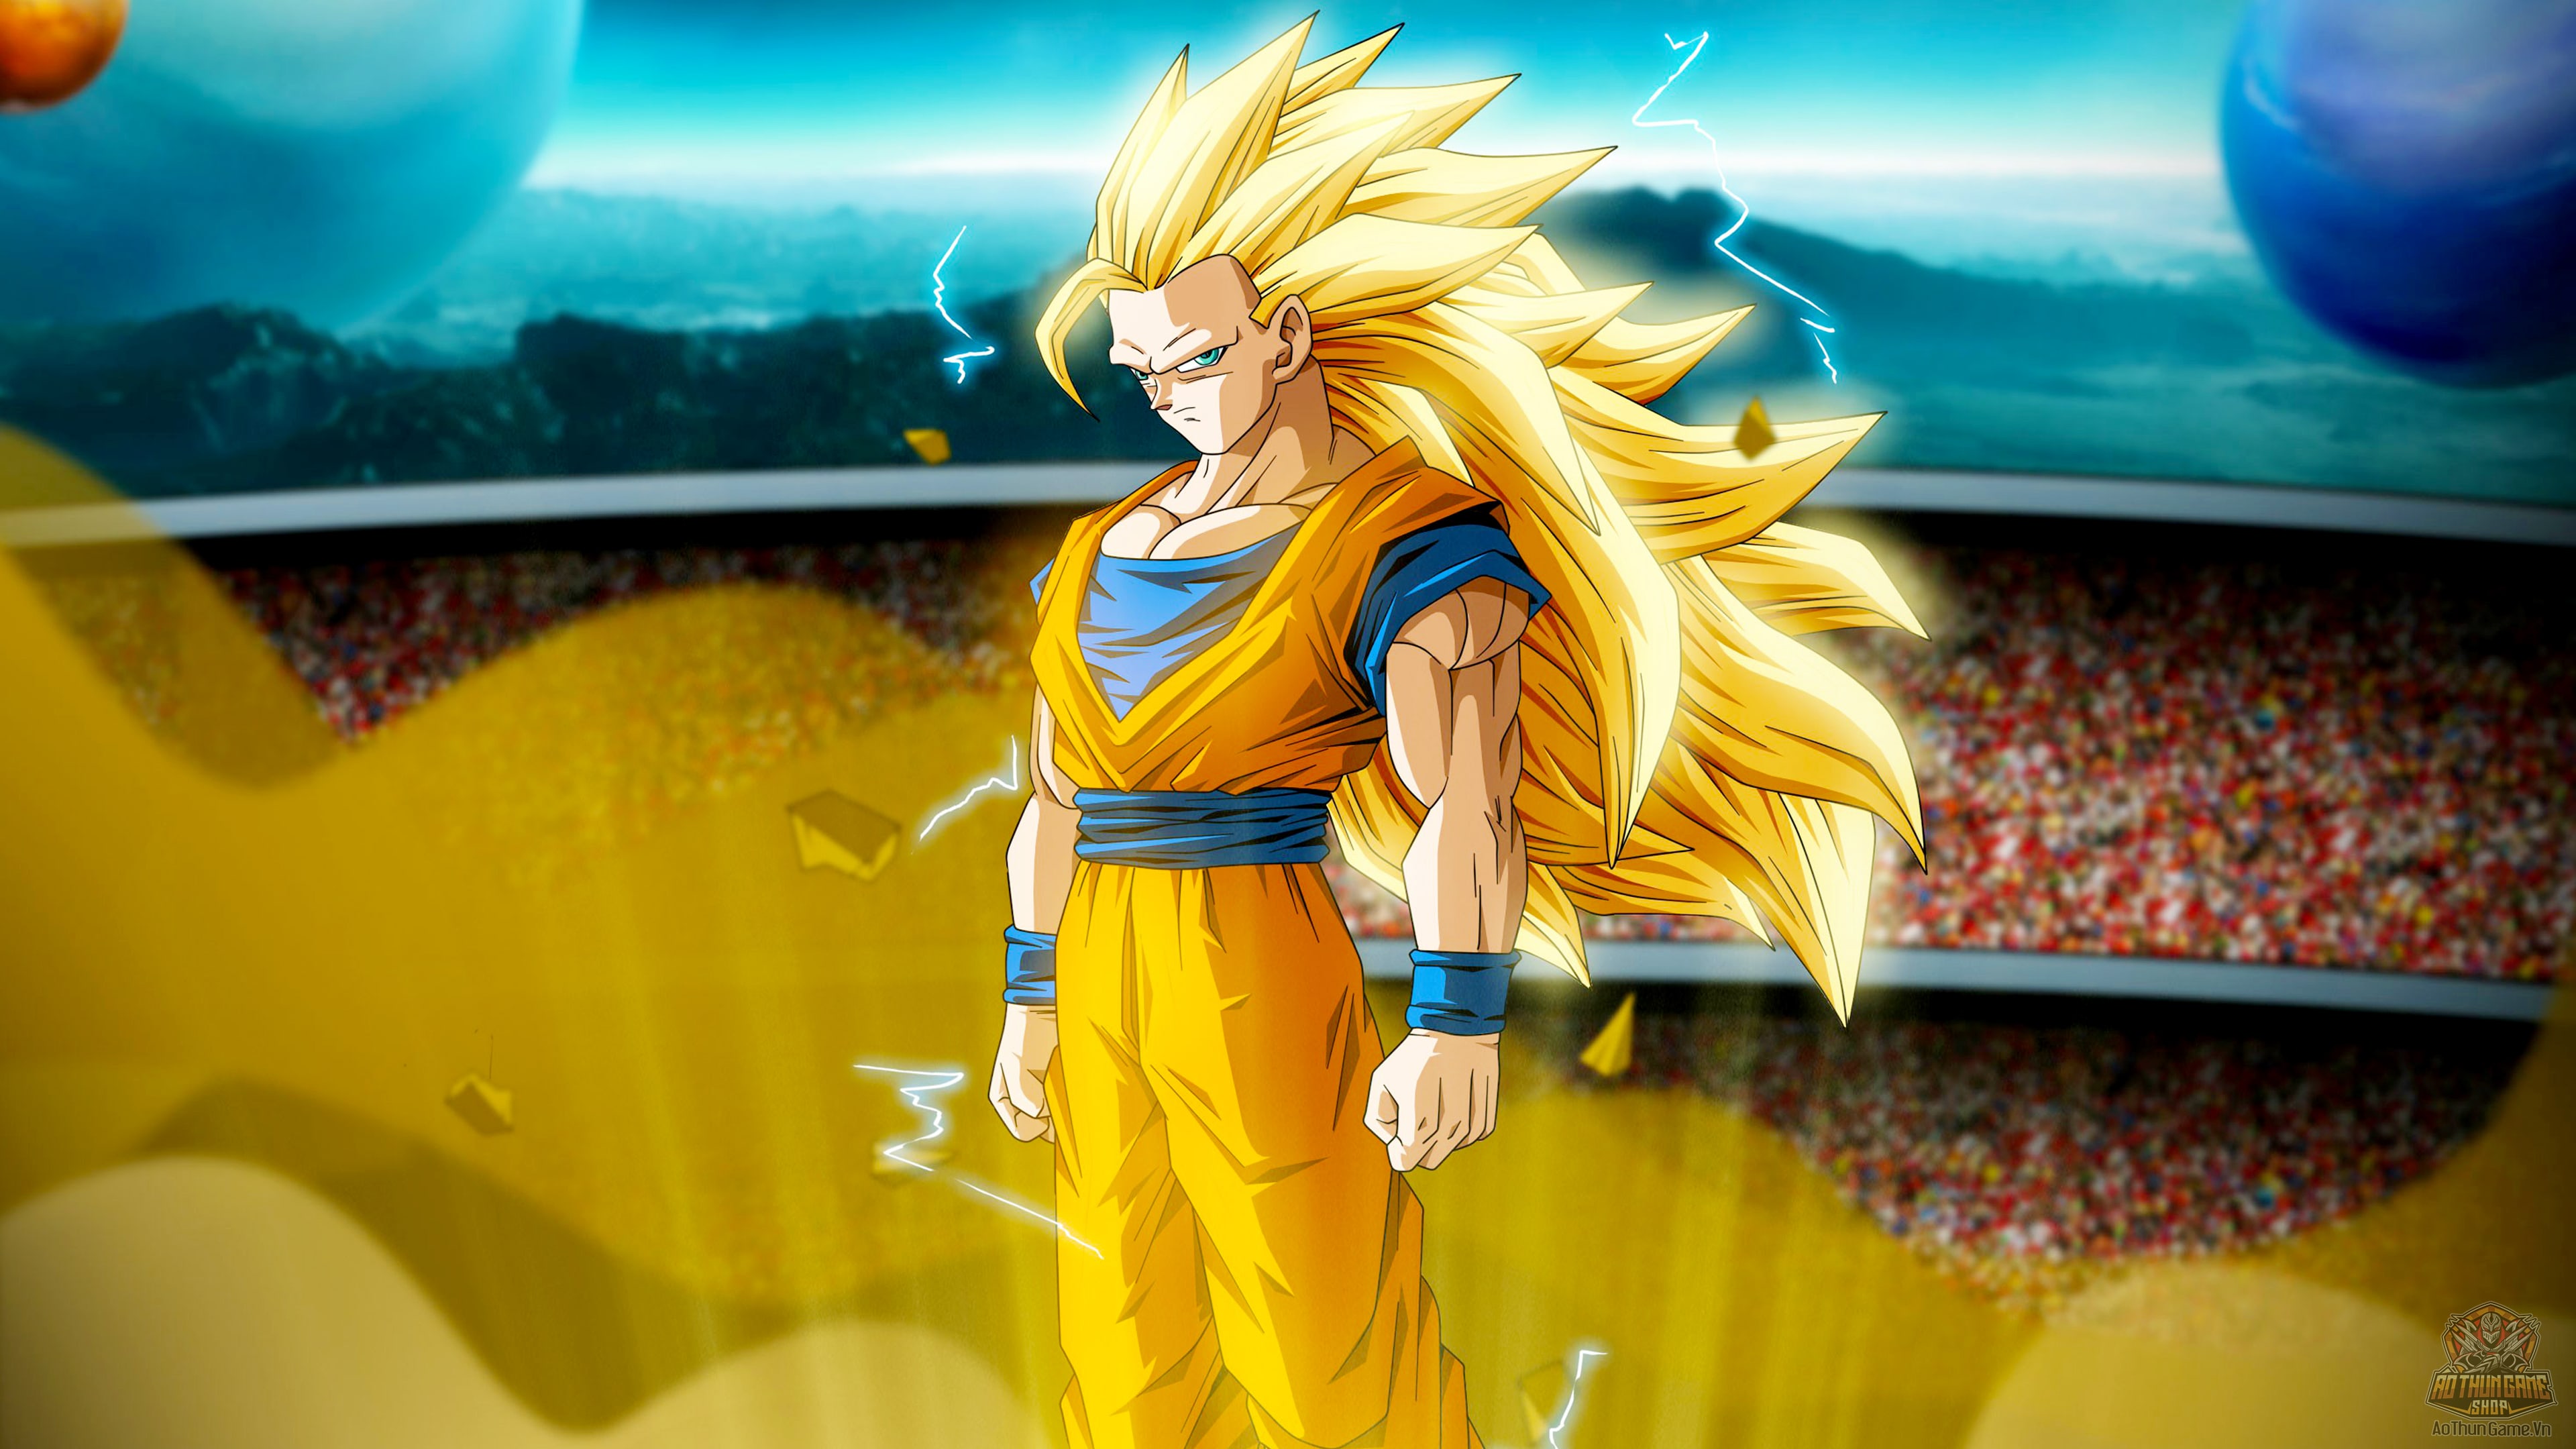 Anime Goku: Anime Goku là một trong những bộ anime nổi tiếng nhất trong lịch sử. Với những bộ phim đầy màu sắc và những nhân vật đáng yêu, Anime Goku đã trở thành món ăn tinh thần cho hàng triệu người hâm mộ trên toàn thế giới. Hãy xem hình của Anime Goku và thưởng thức những giây phút thư giãn tuyệt vời! Translation: Anime Goku is one of the most famous anime series in history. With colorful films and adorable characters, Anime Goku has become a spiritual food for millions of fans worldwide. Check out the image of Anime Goku and enjoy the great relaxing moments!